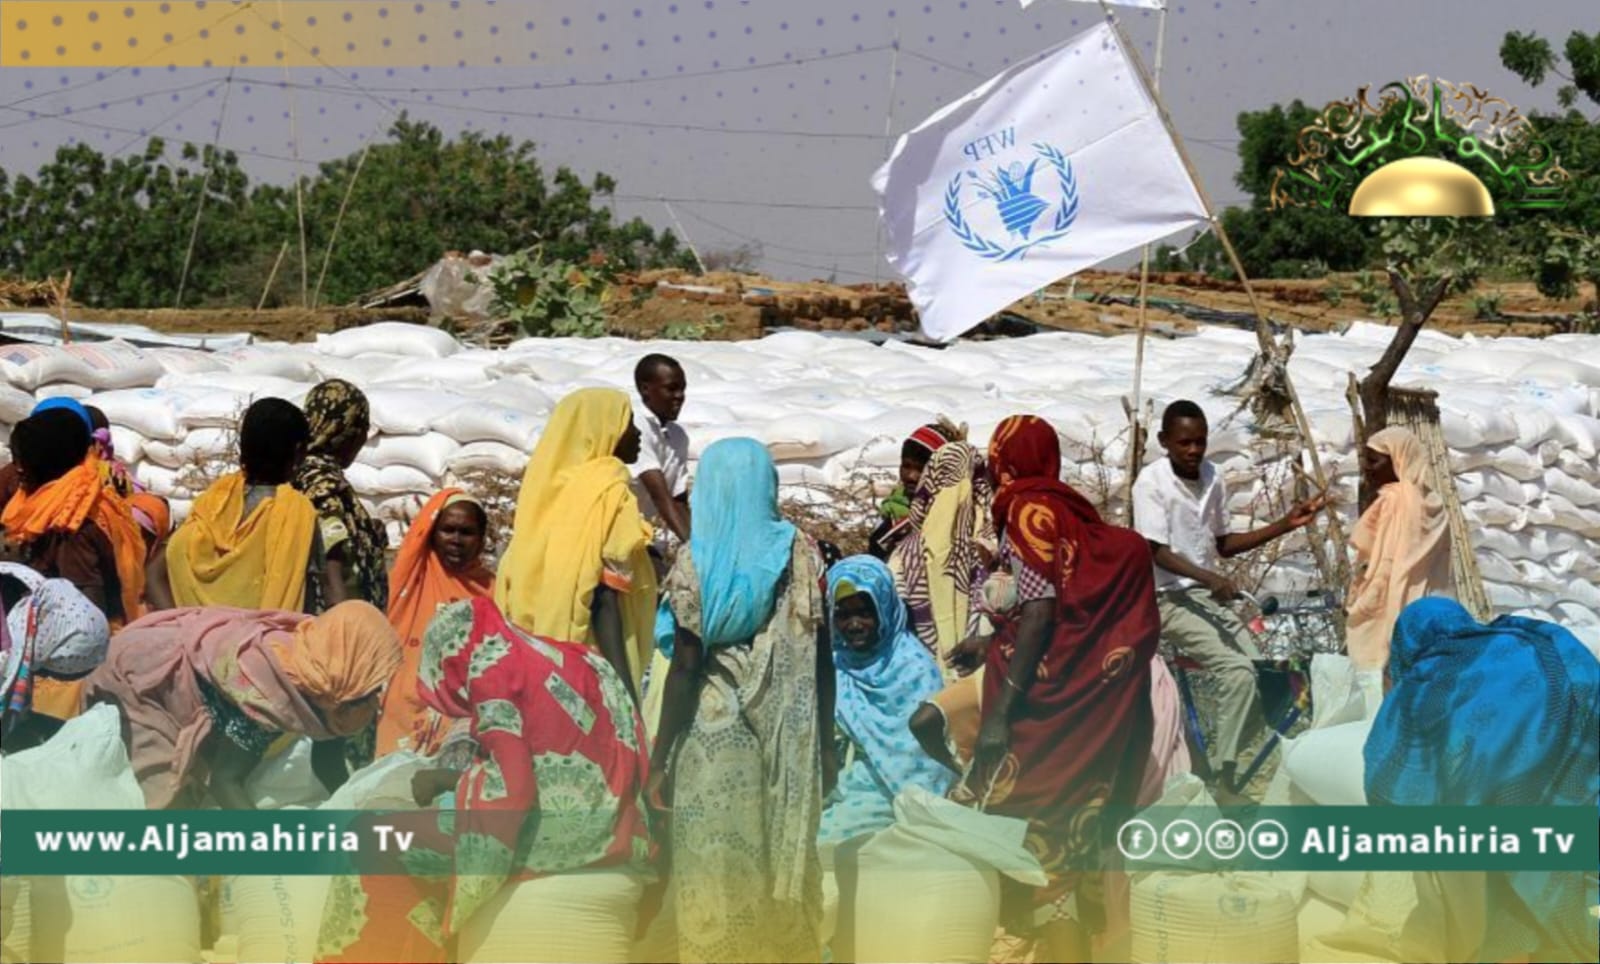 برنامج الأغذية العالمي: نهب 17 ألف طن من المساعدات الإنسانية في السودان